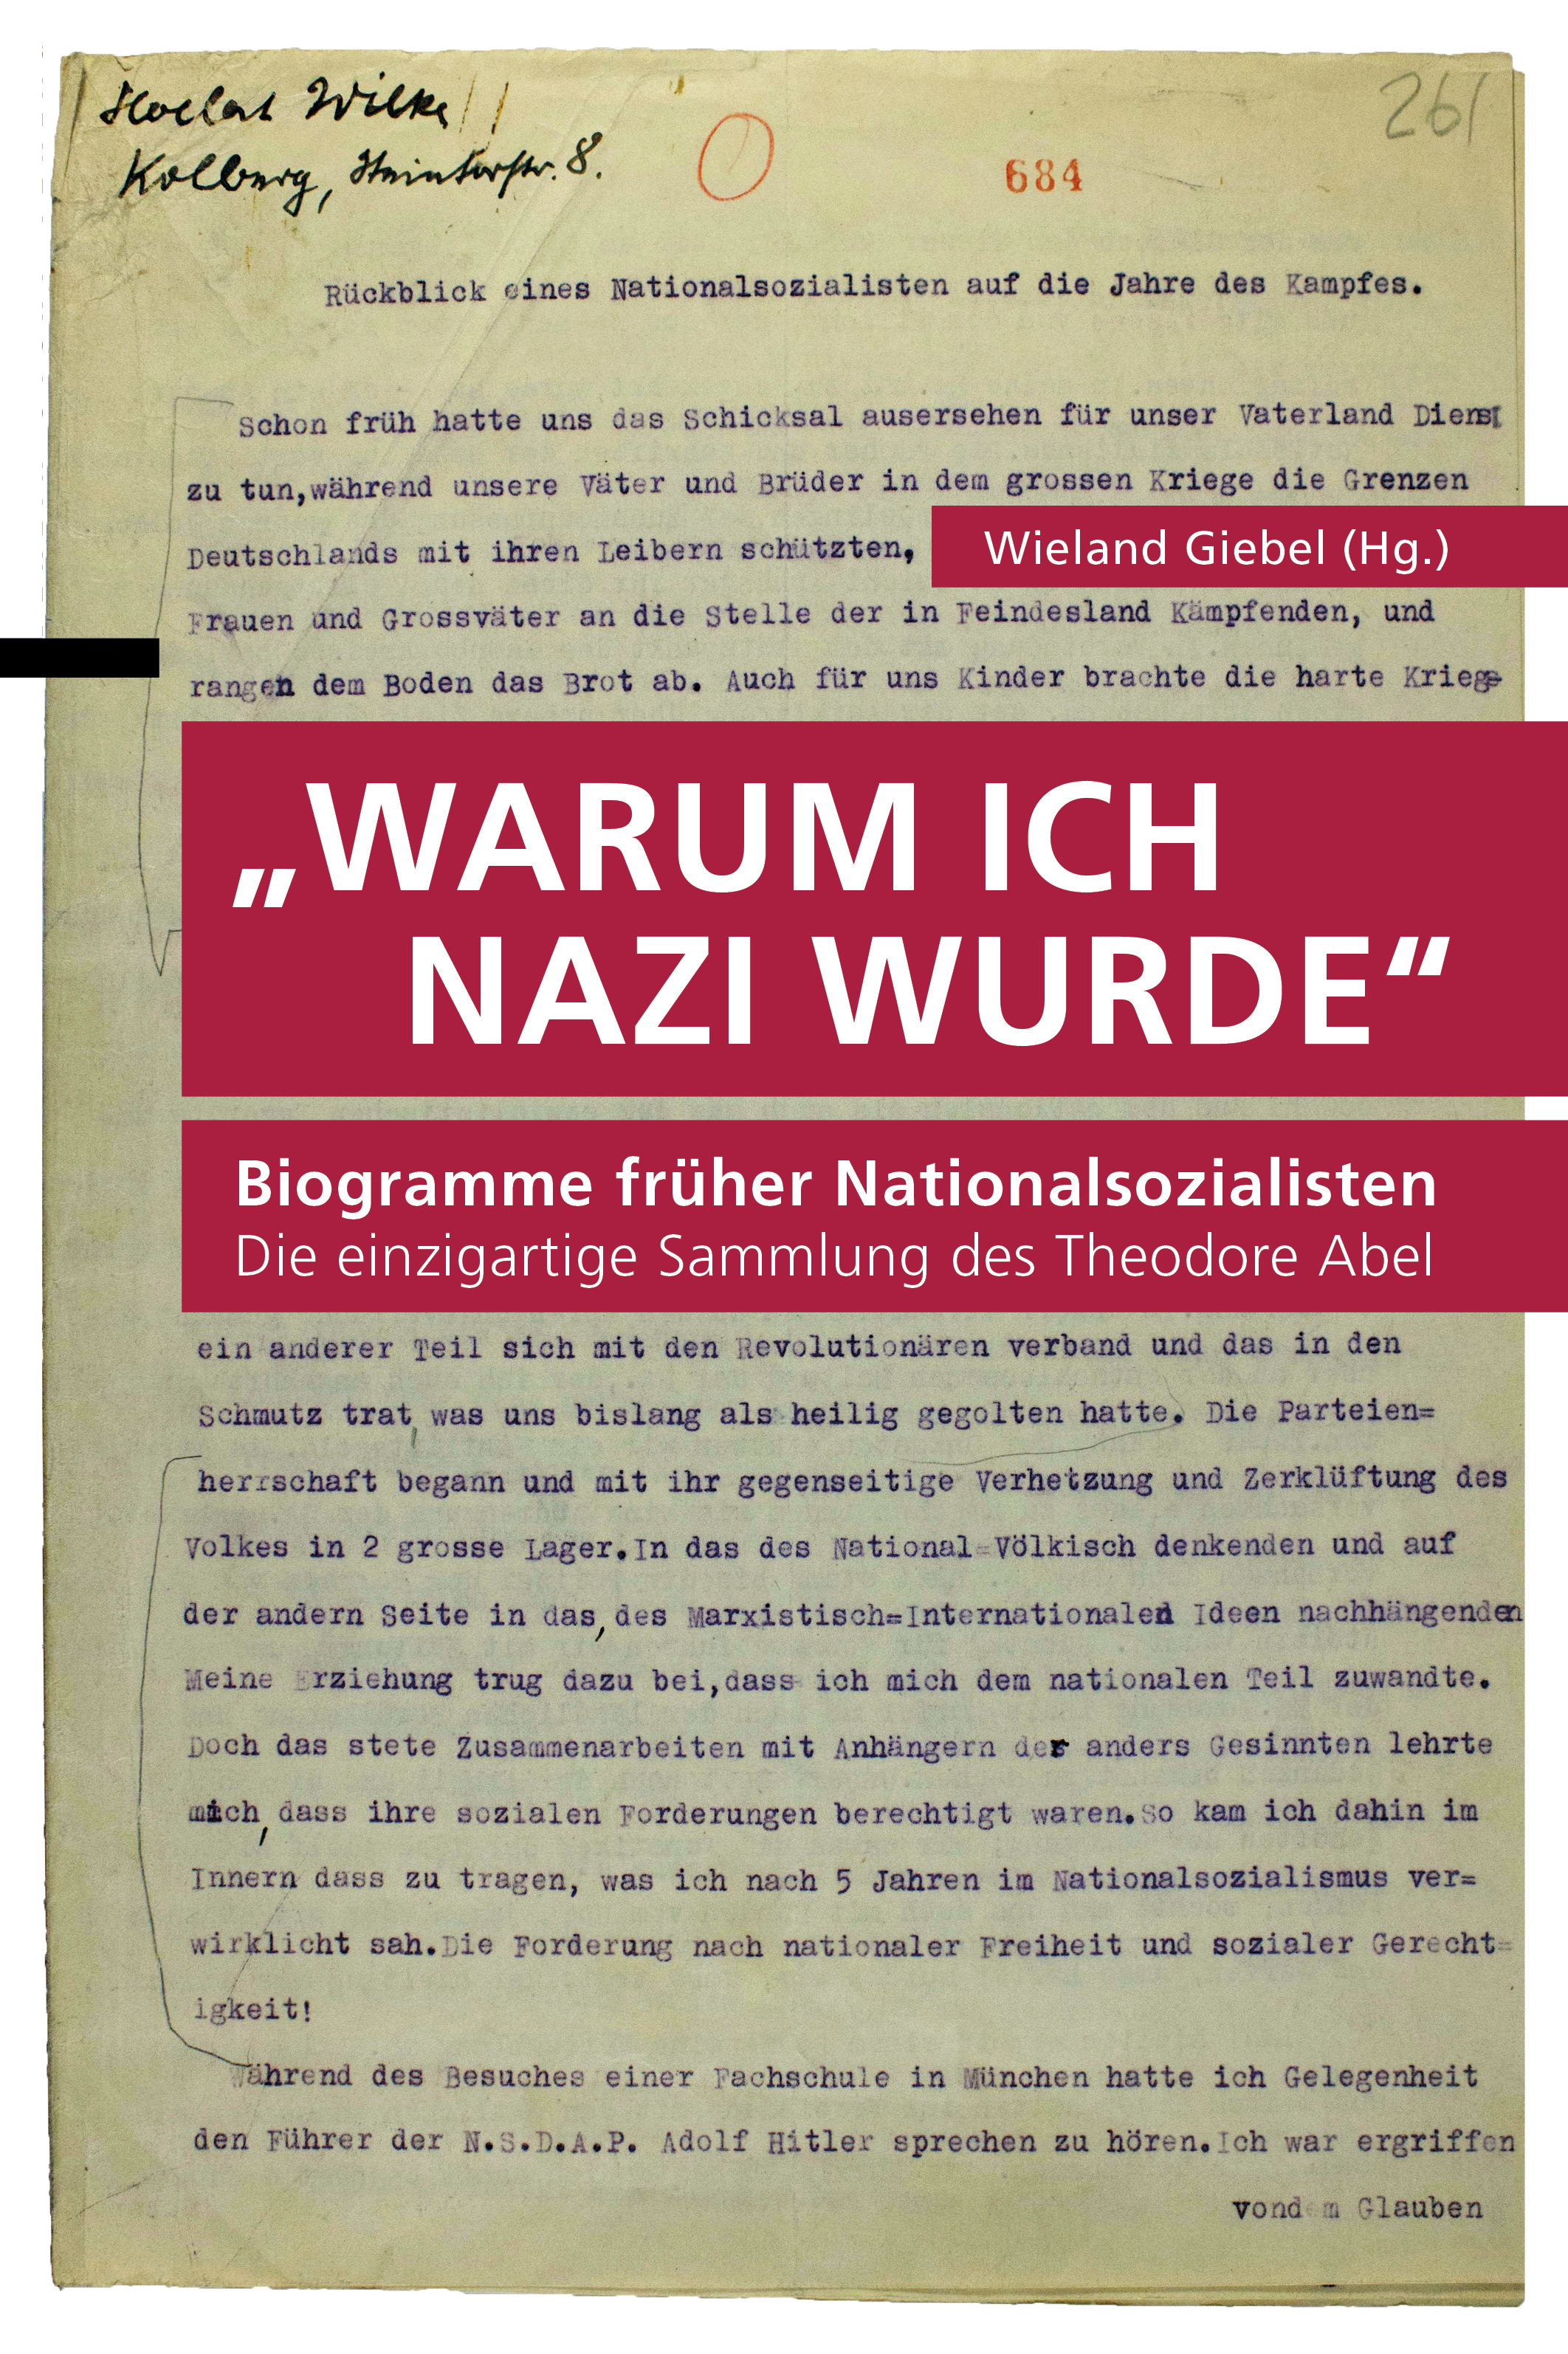 Biogramme früher Nationalsozialisten - Warum ich Nazi wurde